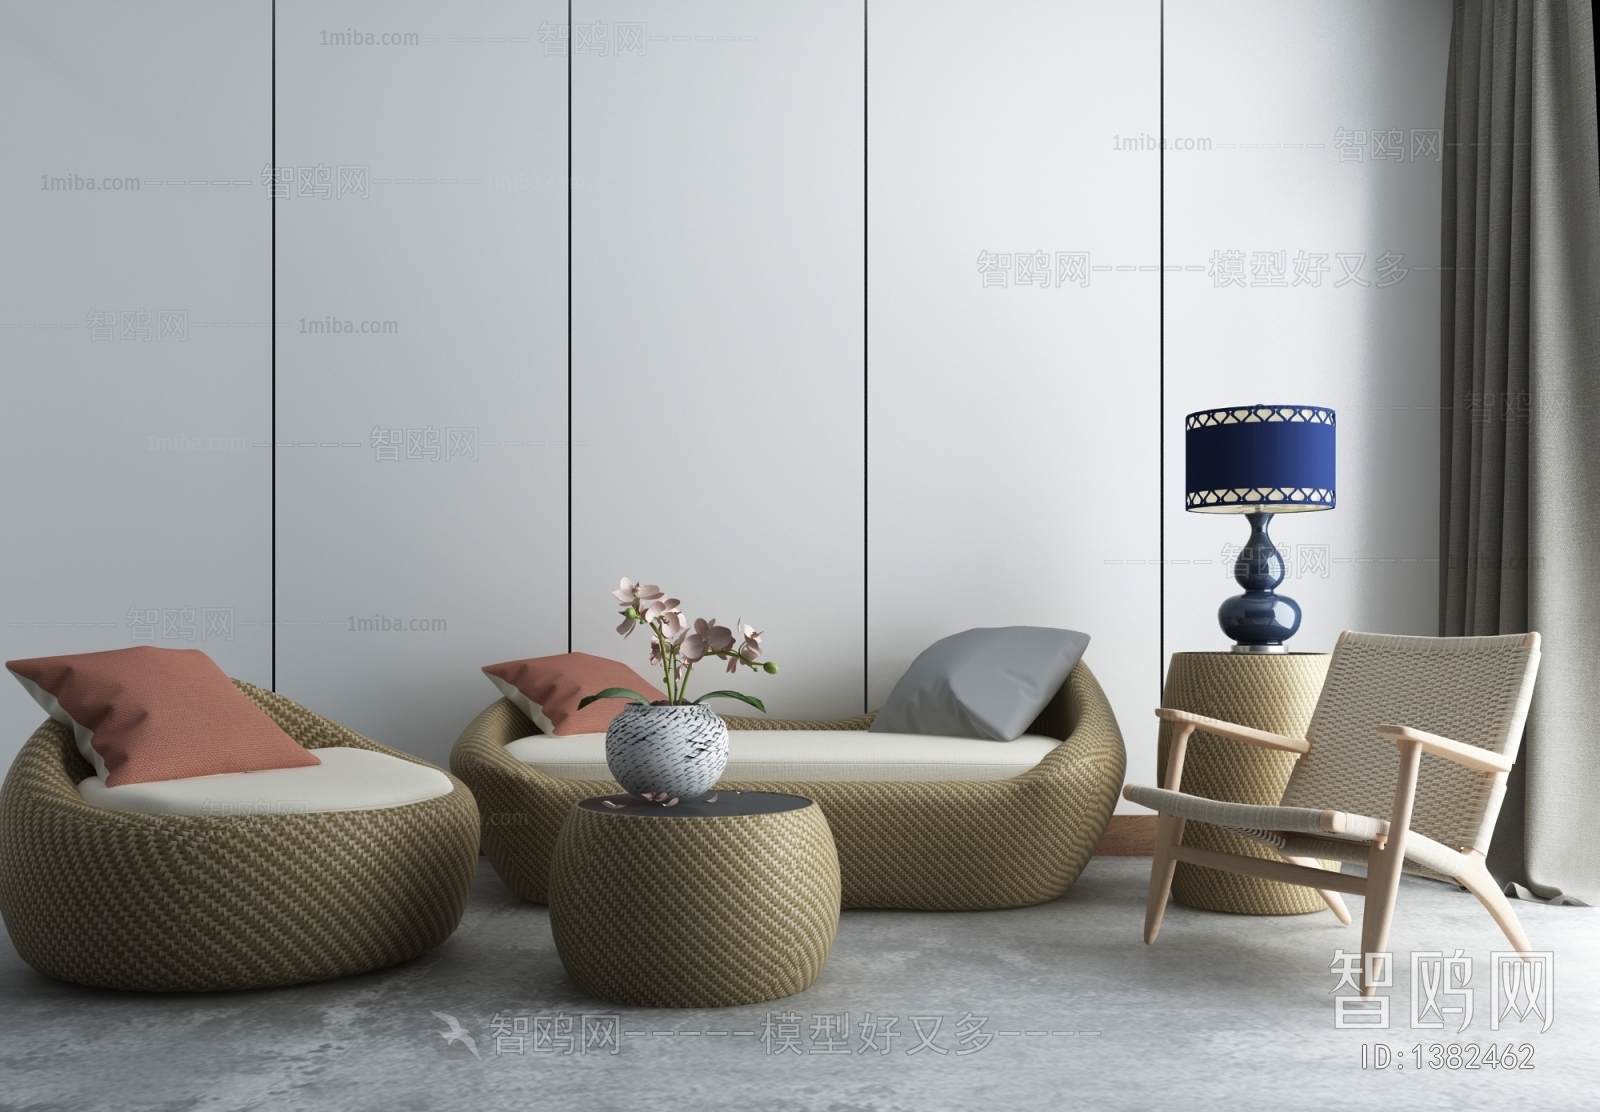 中式竹编藤椅沙发茶几组合